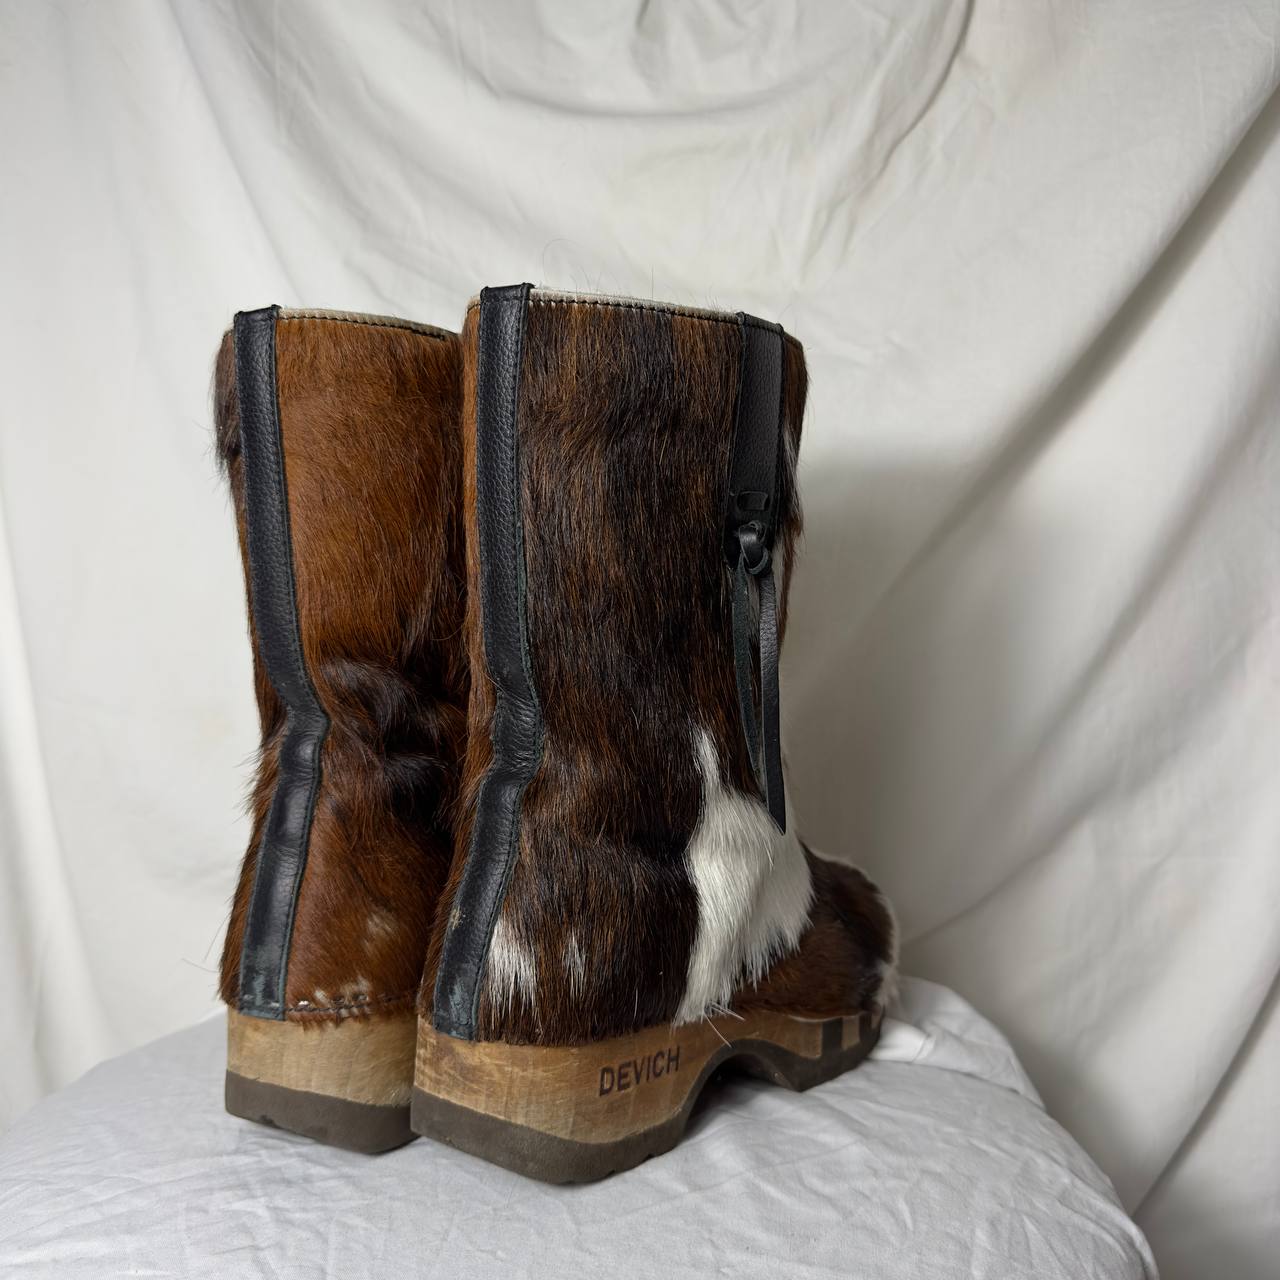 Vintage Fur Boots